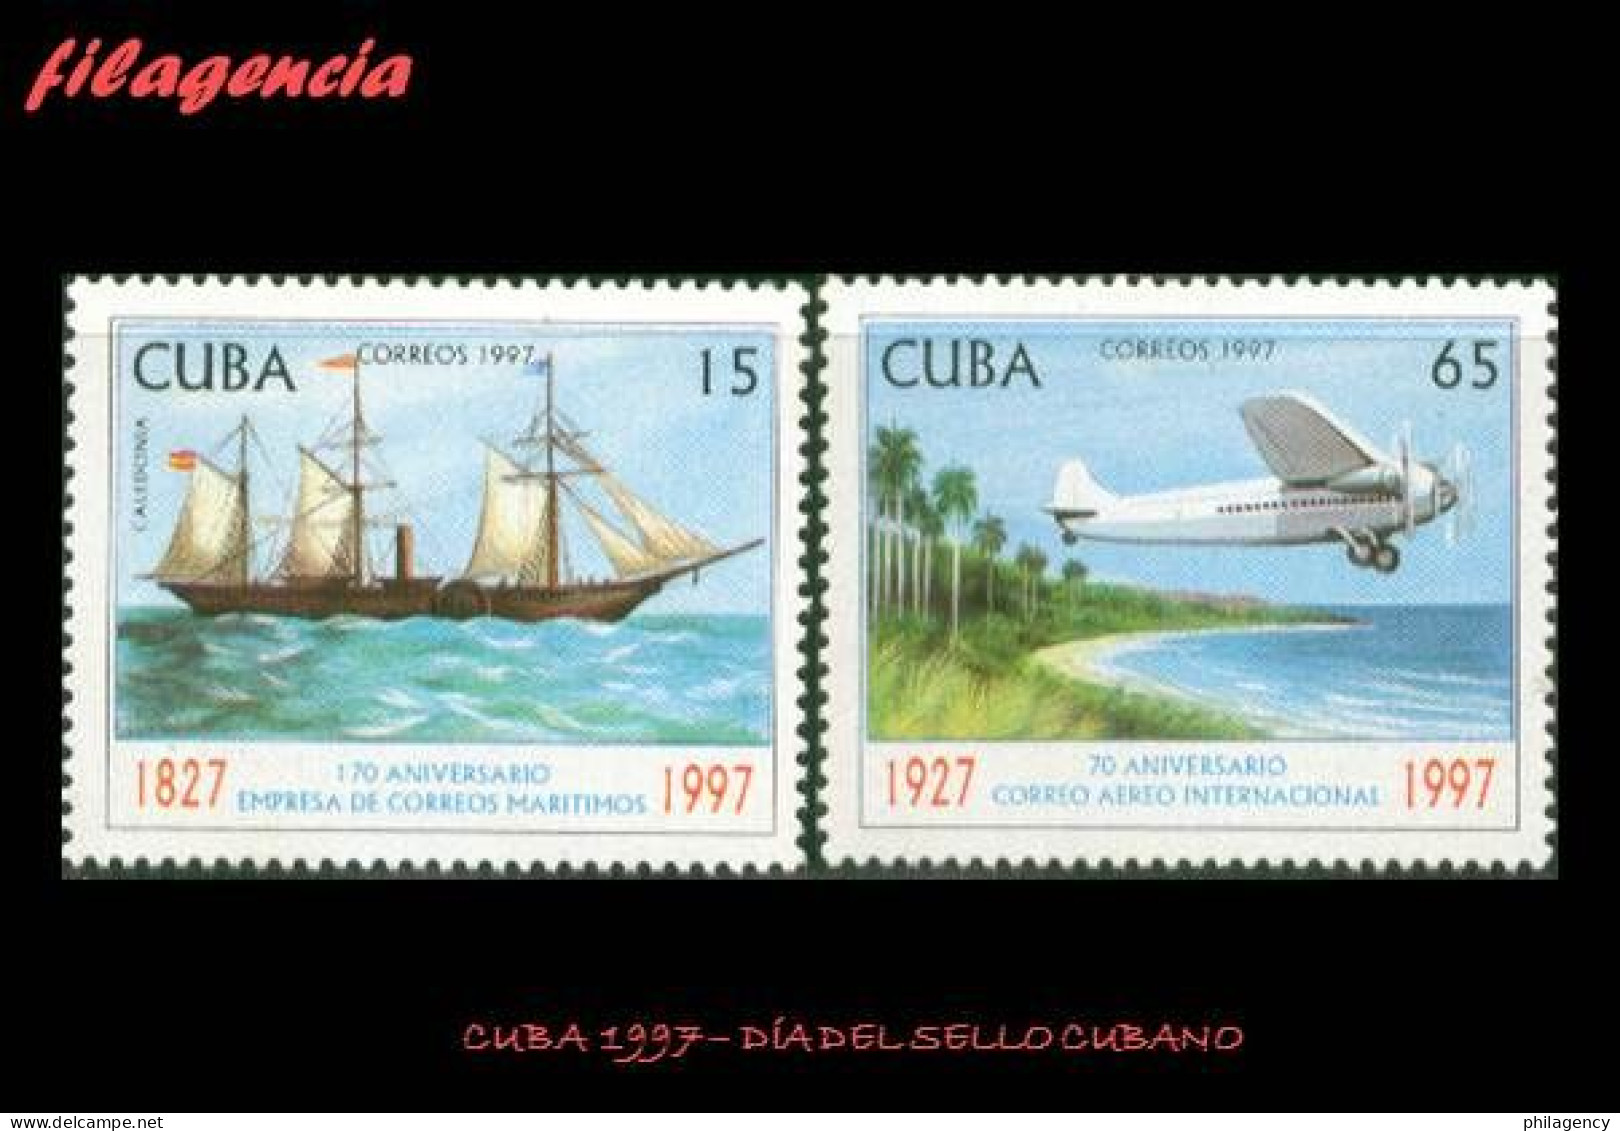 CUBA MINT. 1997-08 DÍA DEL SELLO CUBANO. ANIVERSARIOS DEL CORREO MARÍTIMO & AÉREO - Unused Stamps